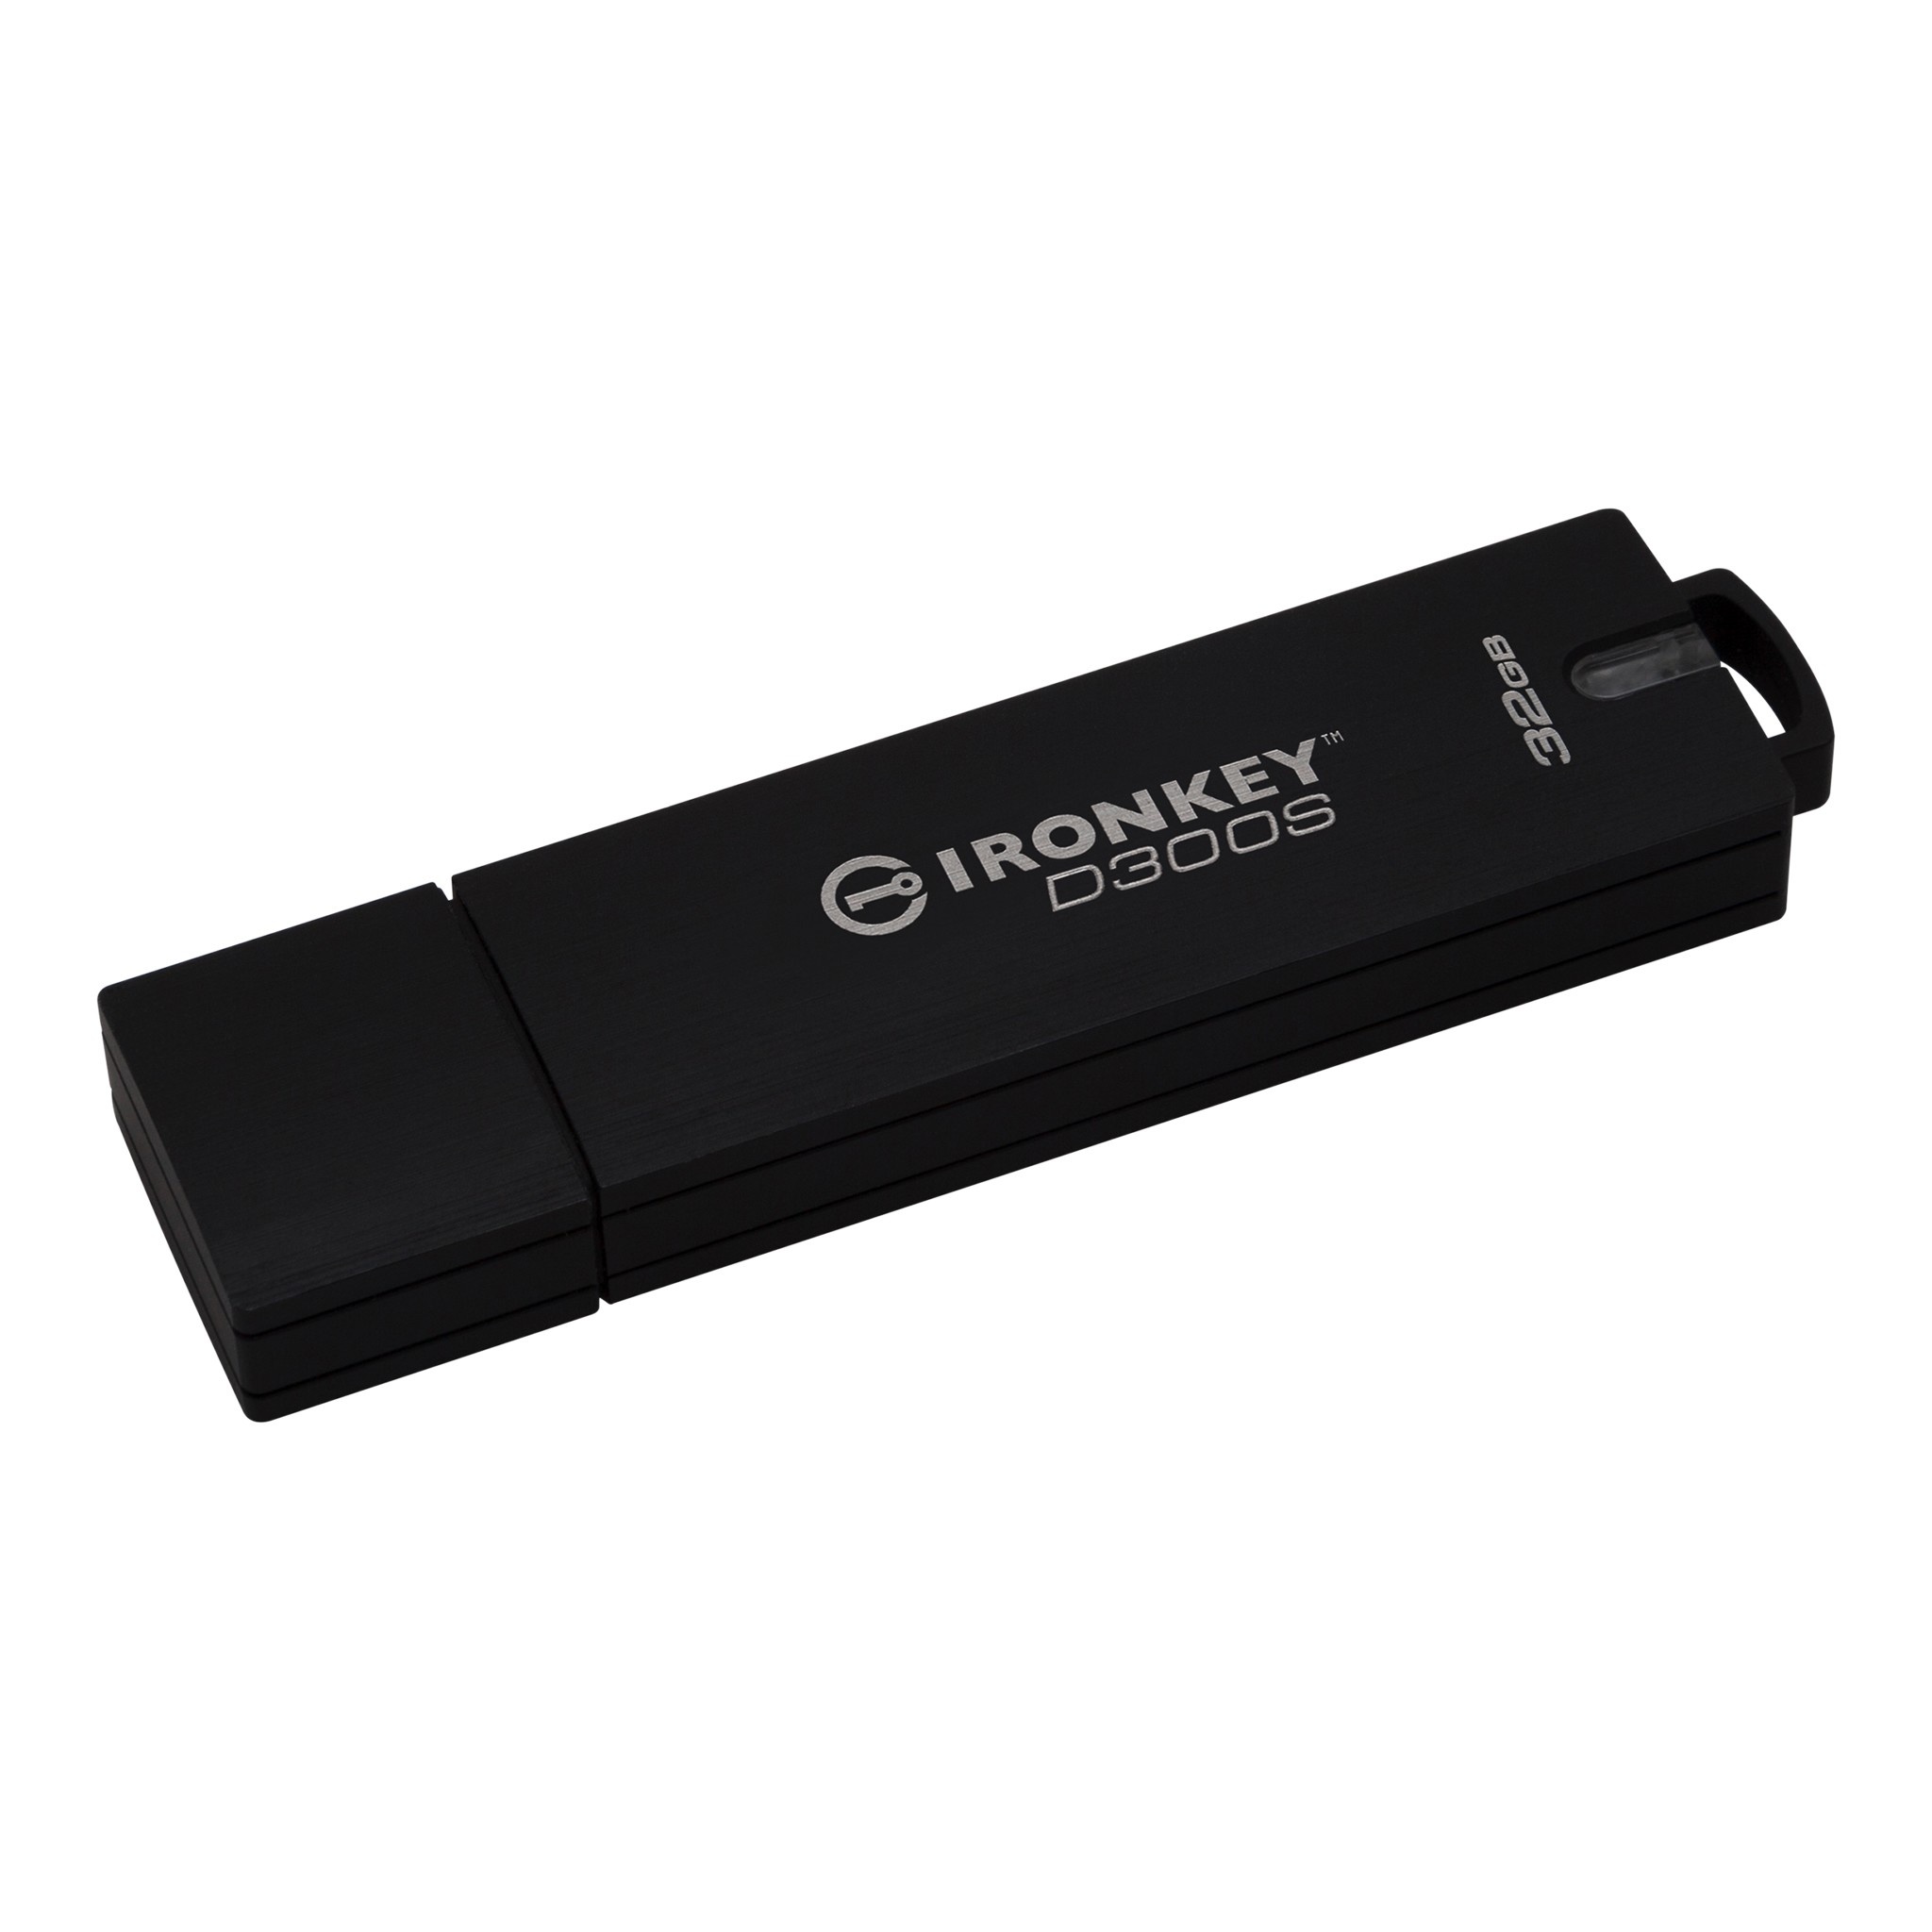 Bild von IronKey D300S 64 GB schwarz USB 3.1